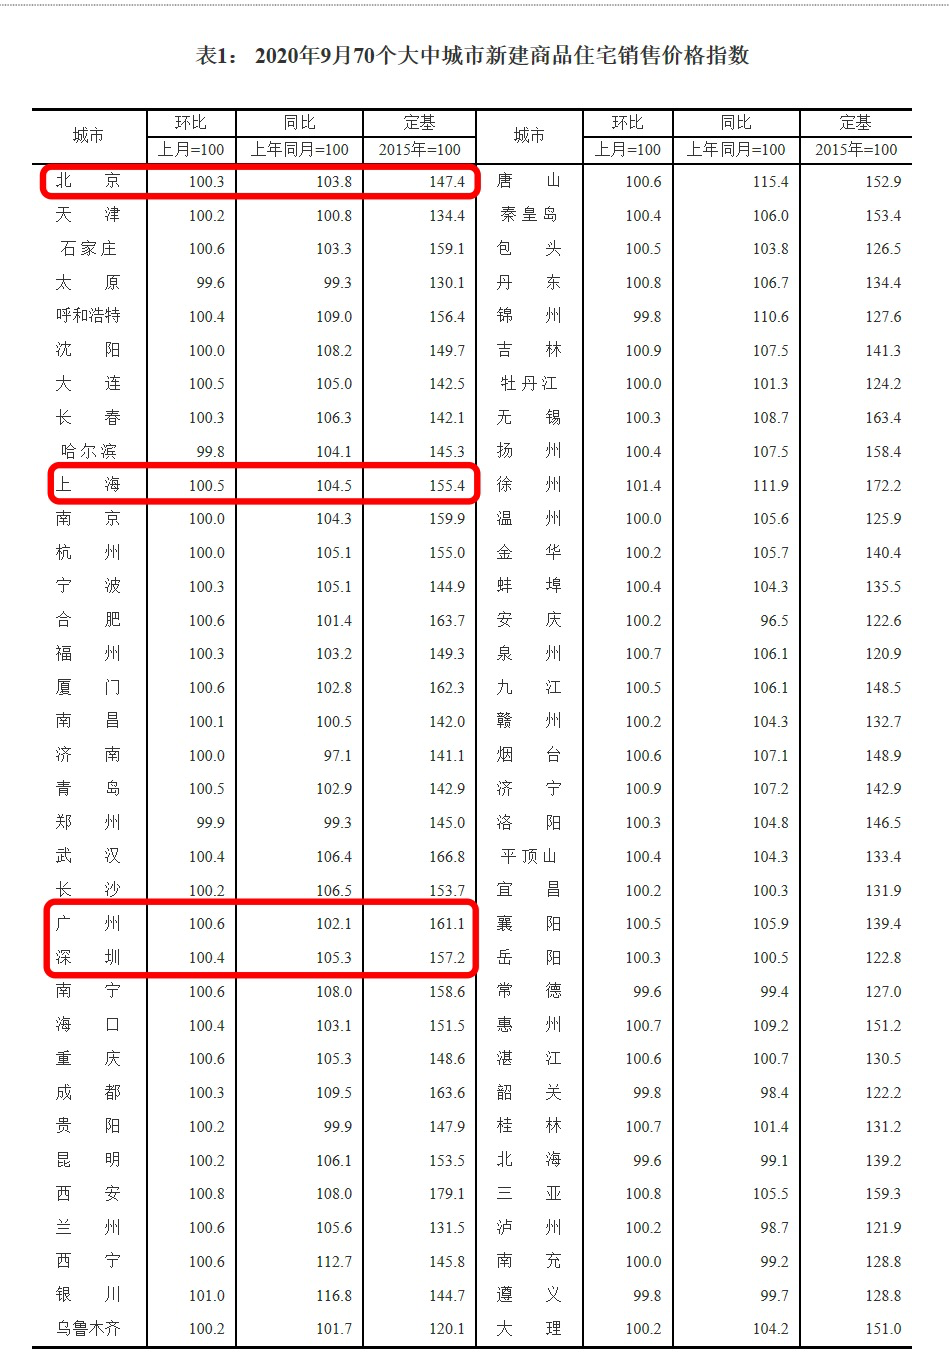 70城房价数据出炉 深圳二手房价格环比上涨1.1%领跑一线城市 涨幅最高的是苏北这座城